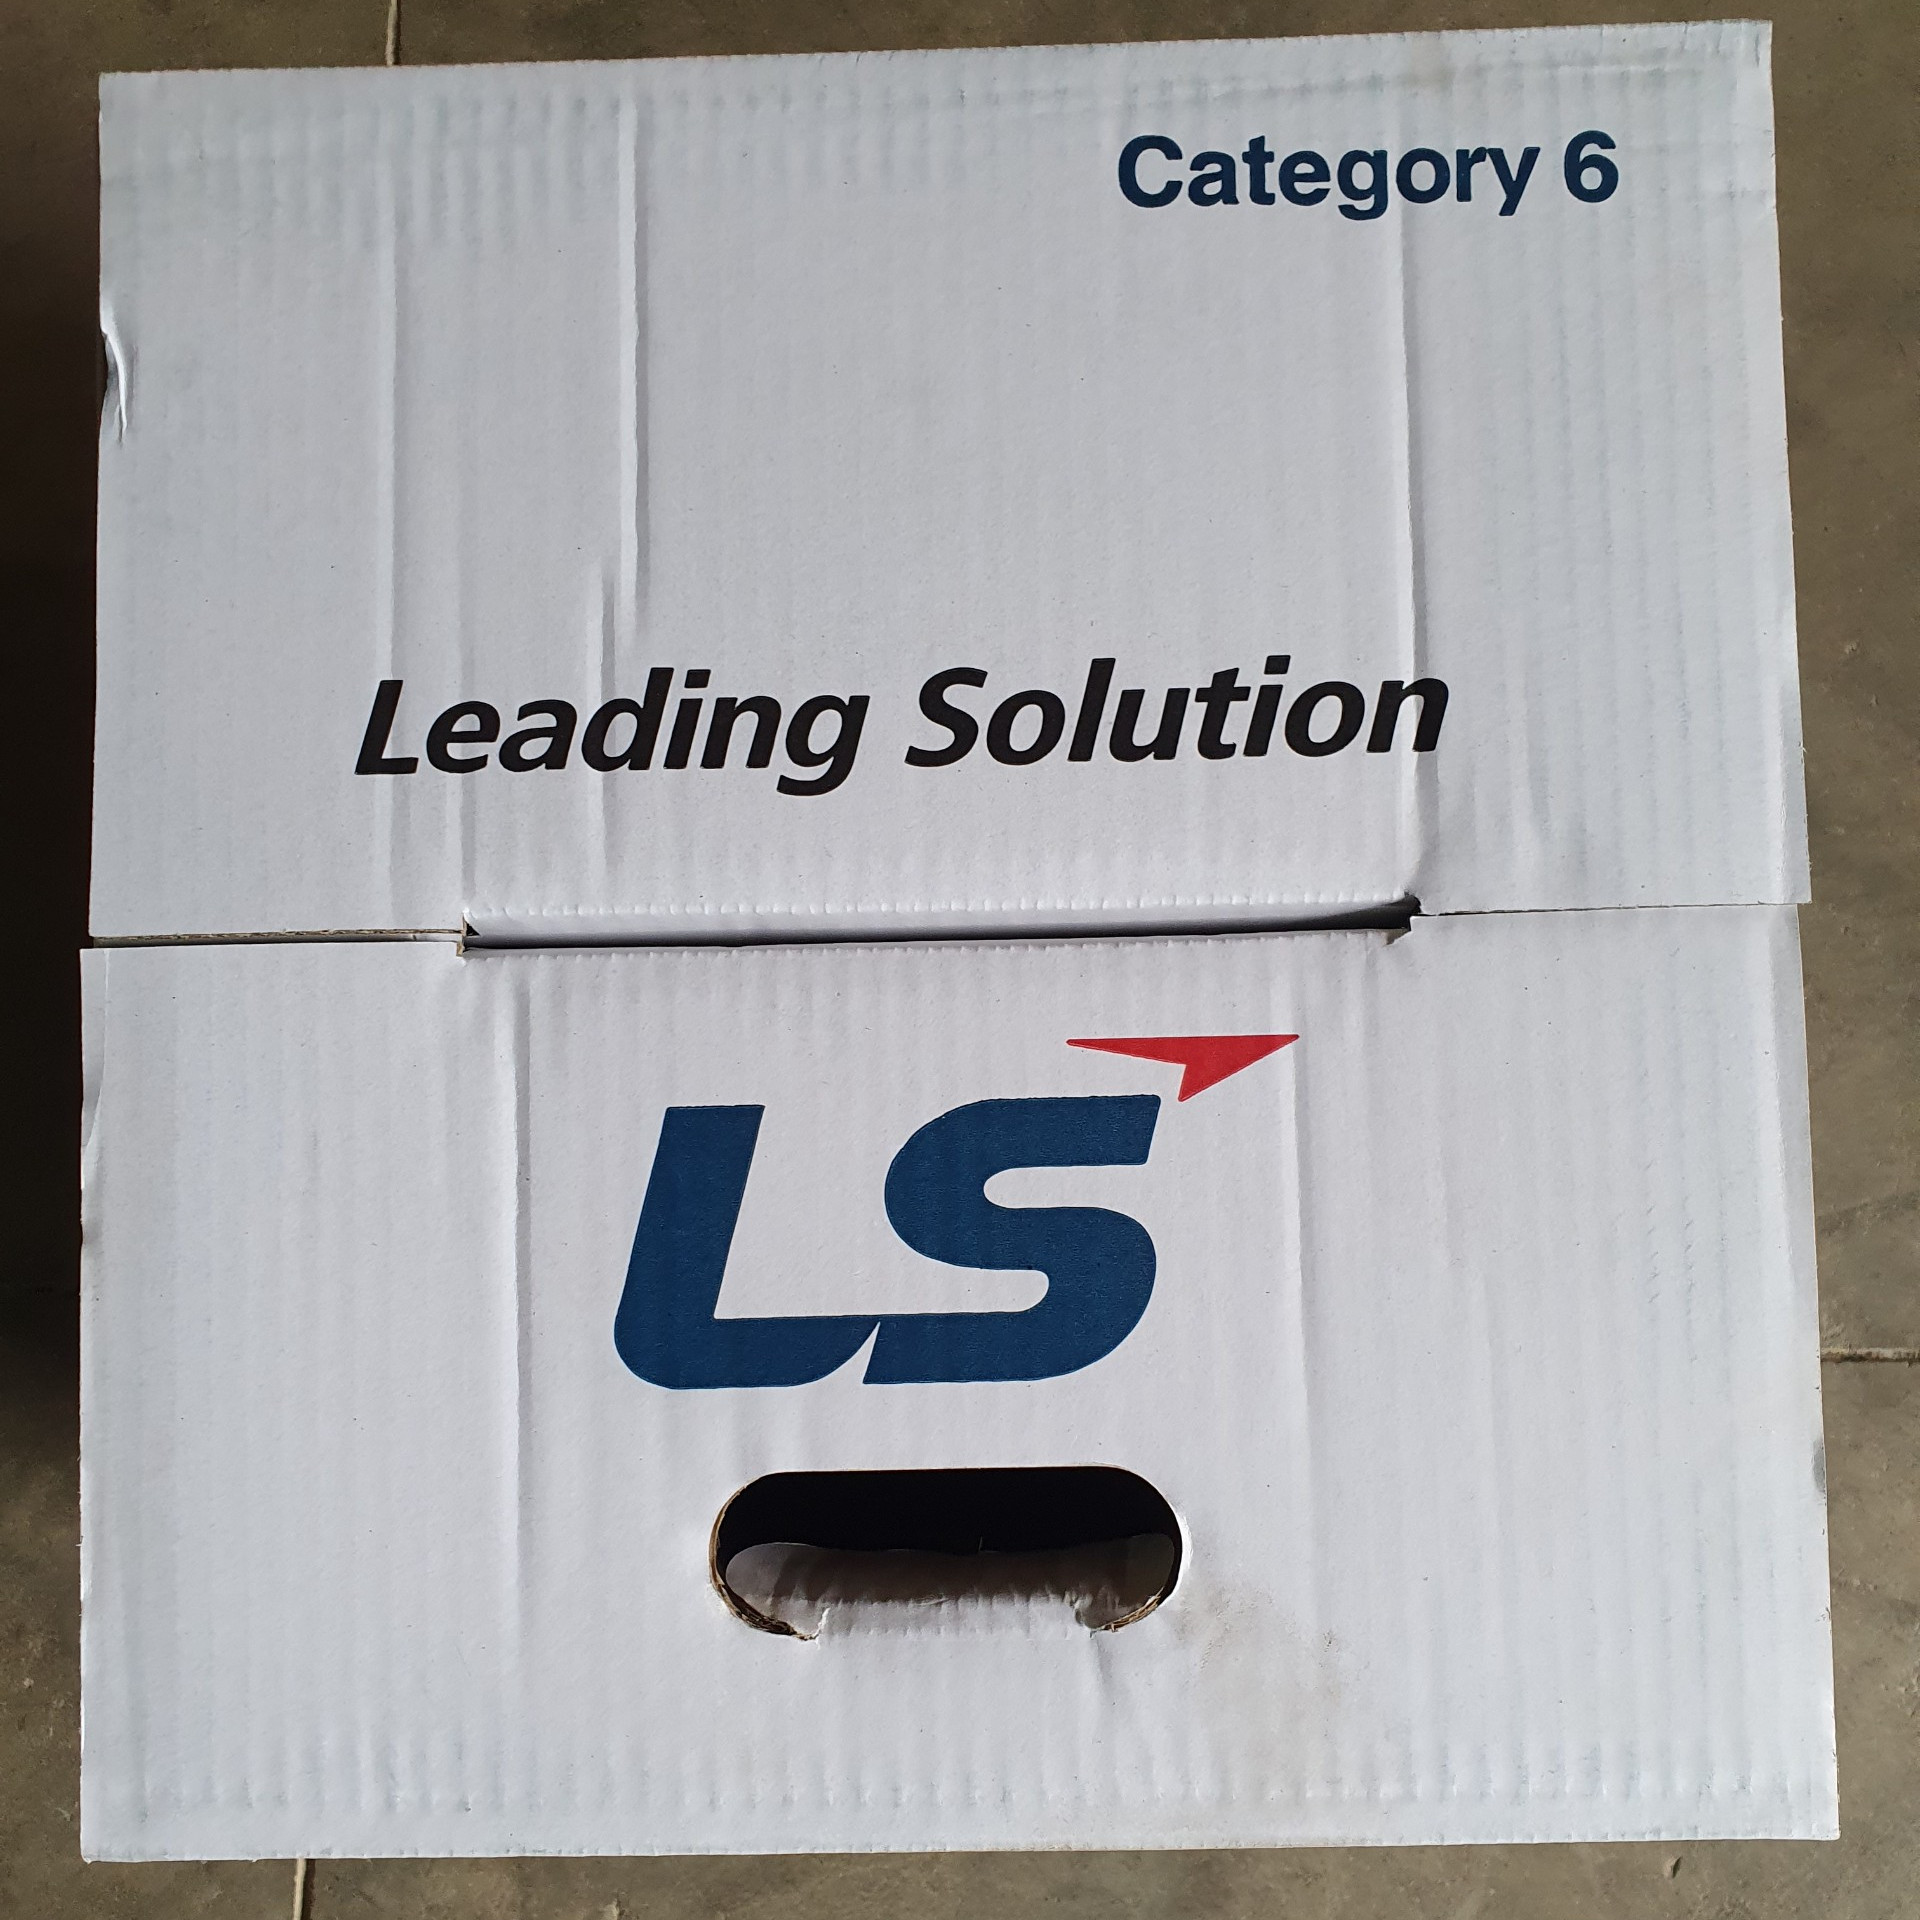 Cáp mạng LS Cat6 (305m/ 1 thùng)